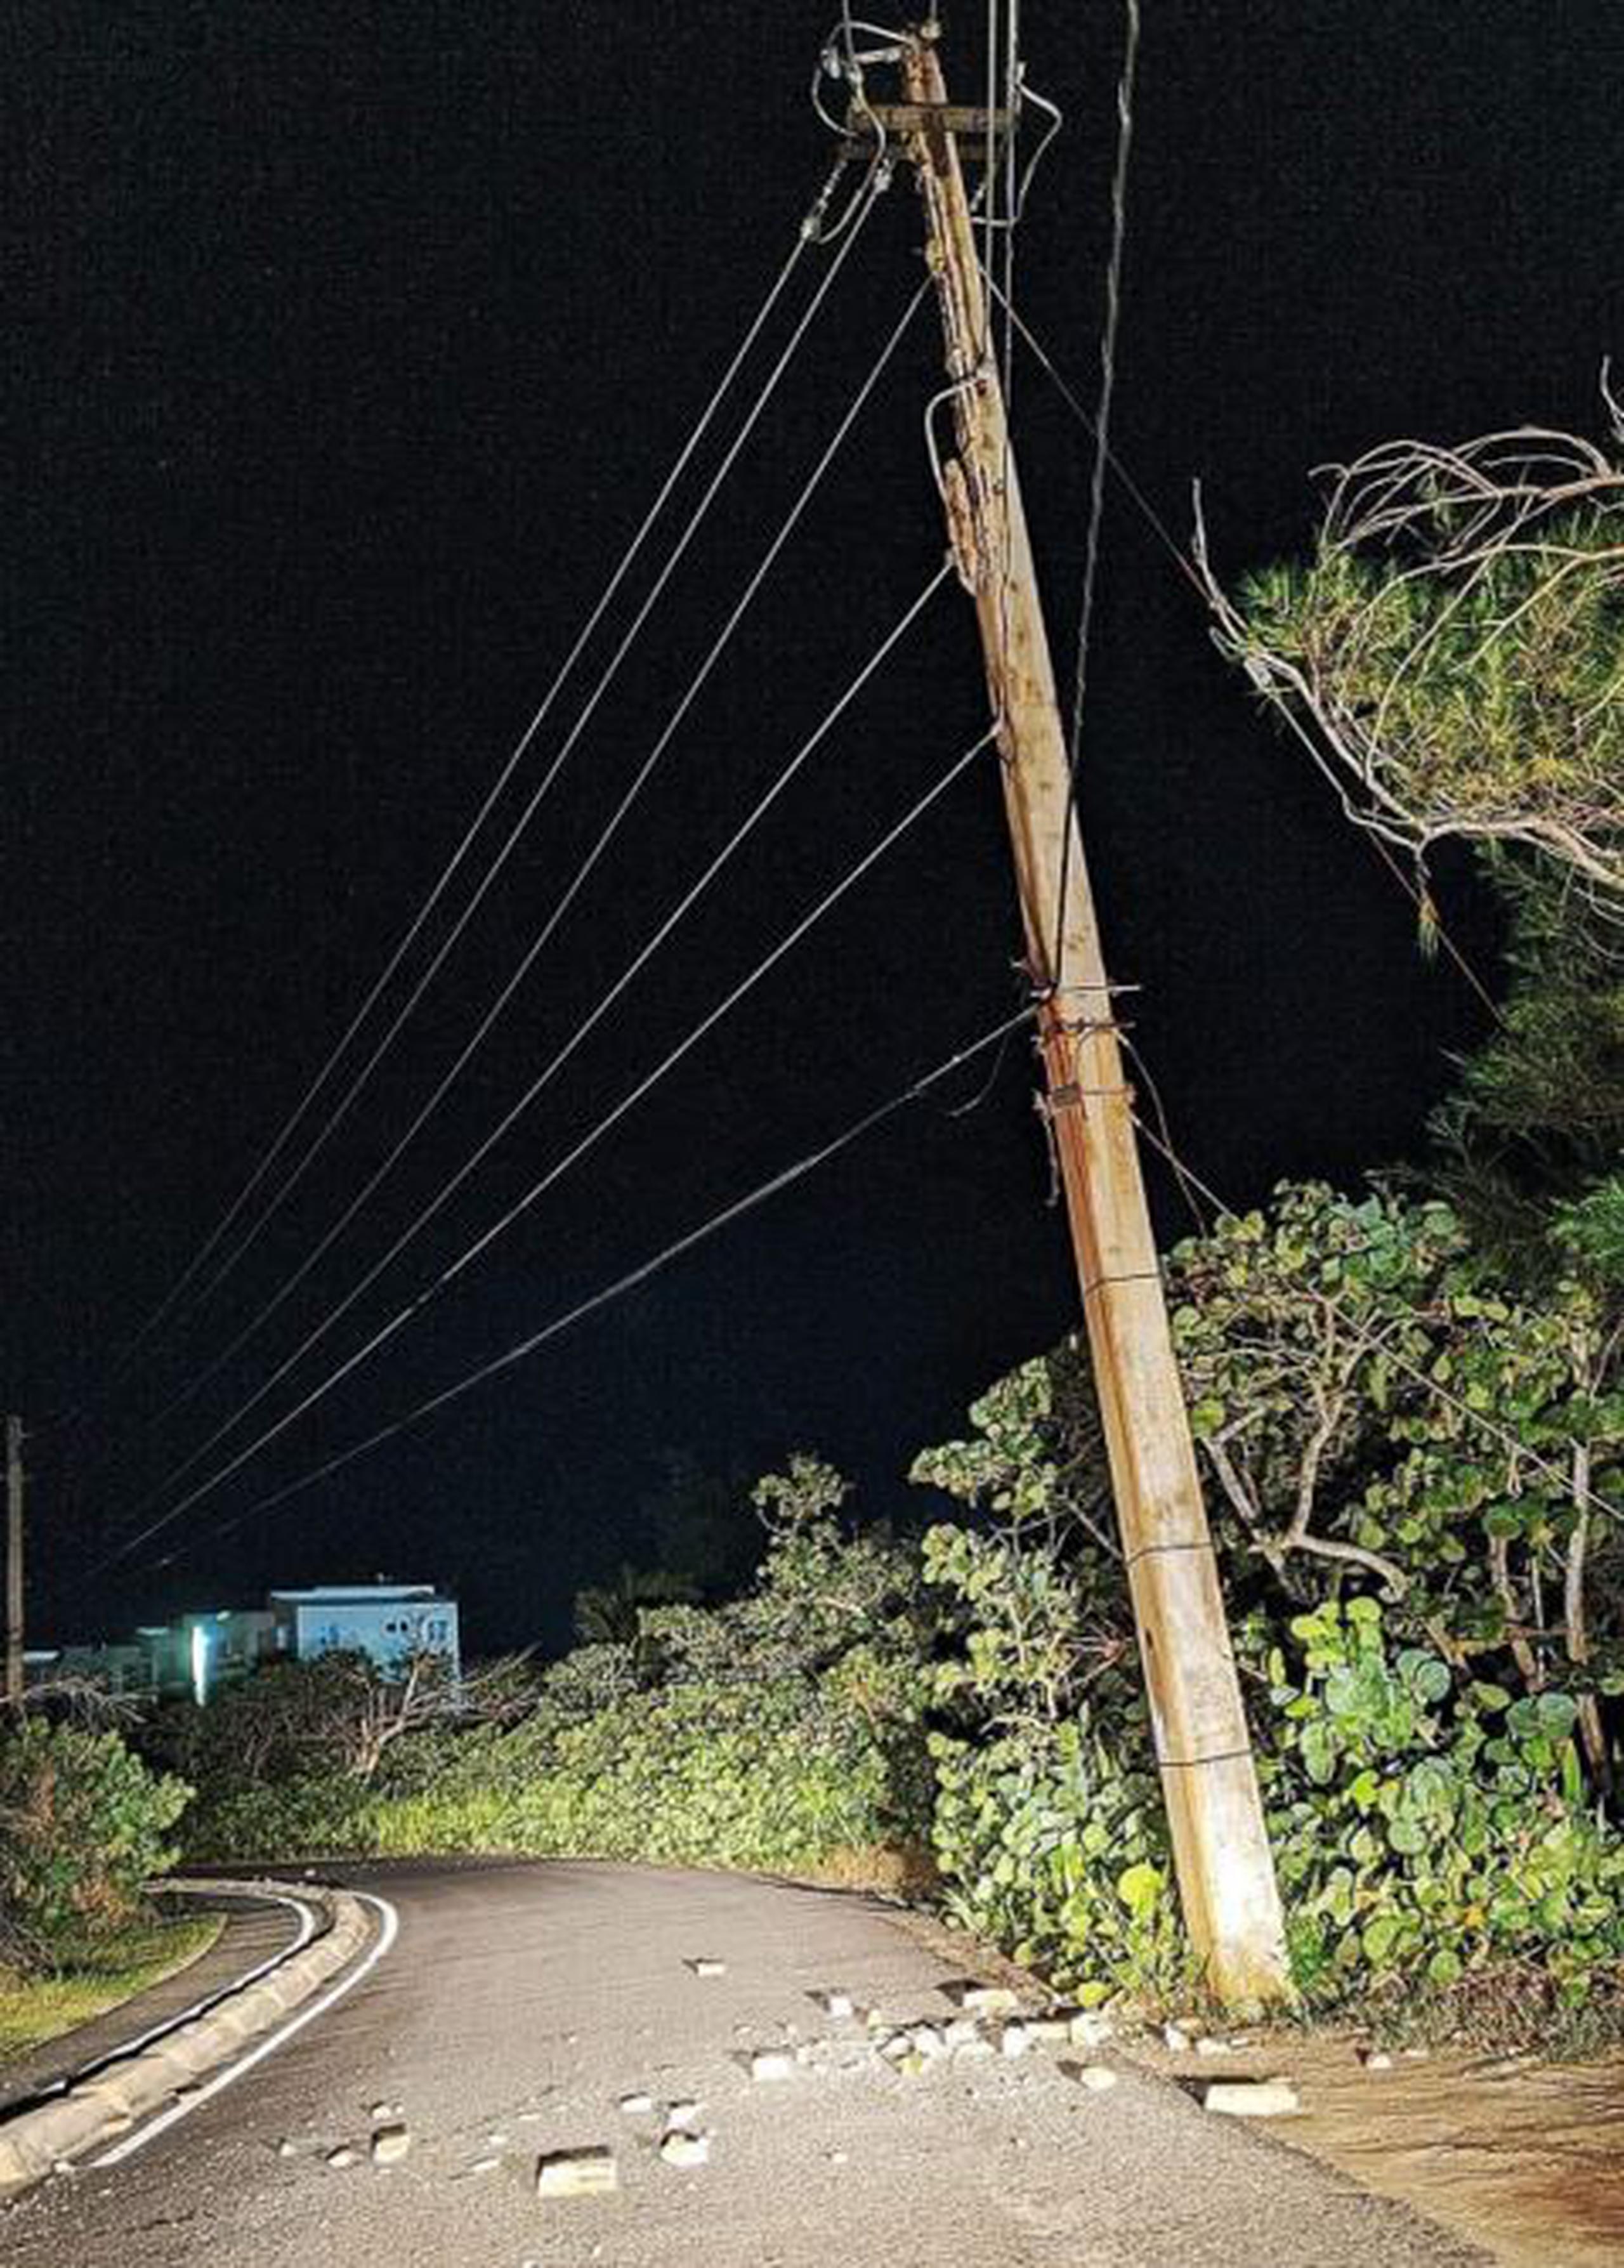 En Isabela, se reportó el desprendimiento de varios pedazos de dos postes de cemento en la Playa Villa Pesquera. No se reportó ninguna persona afectada. (Facebook/SVERI Rescate Isabela)